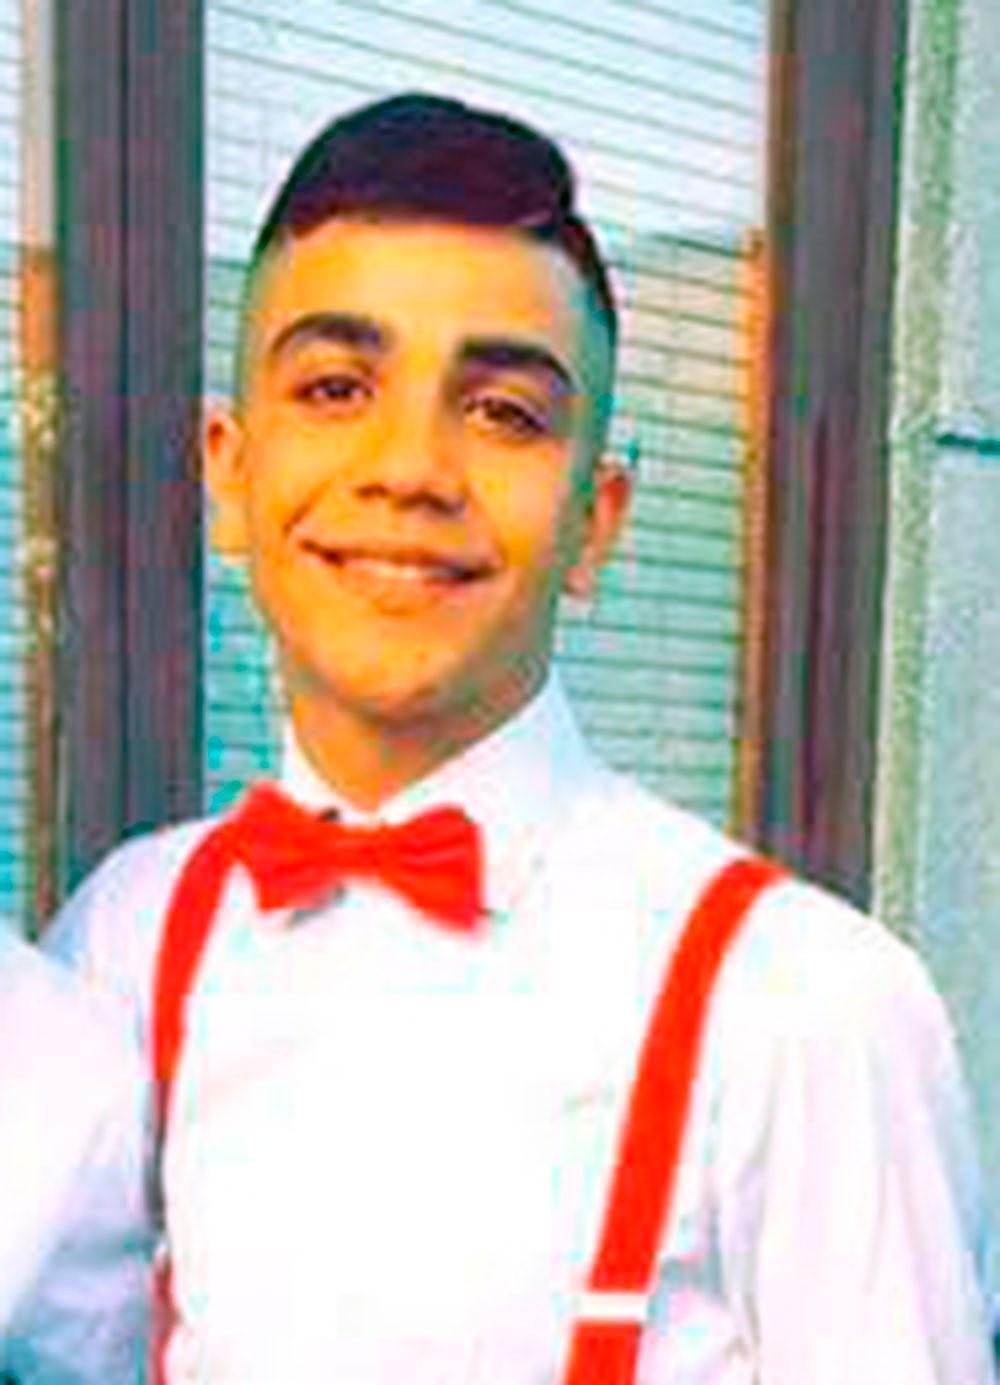 Ahmed, 16, sköts ihjäl på en busshållplats i januari.